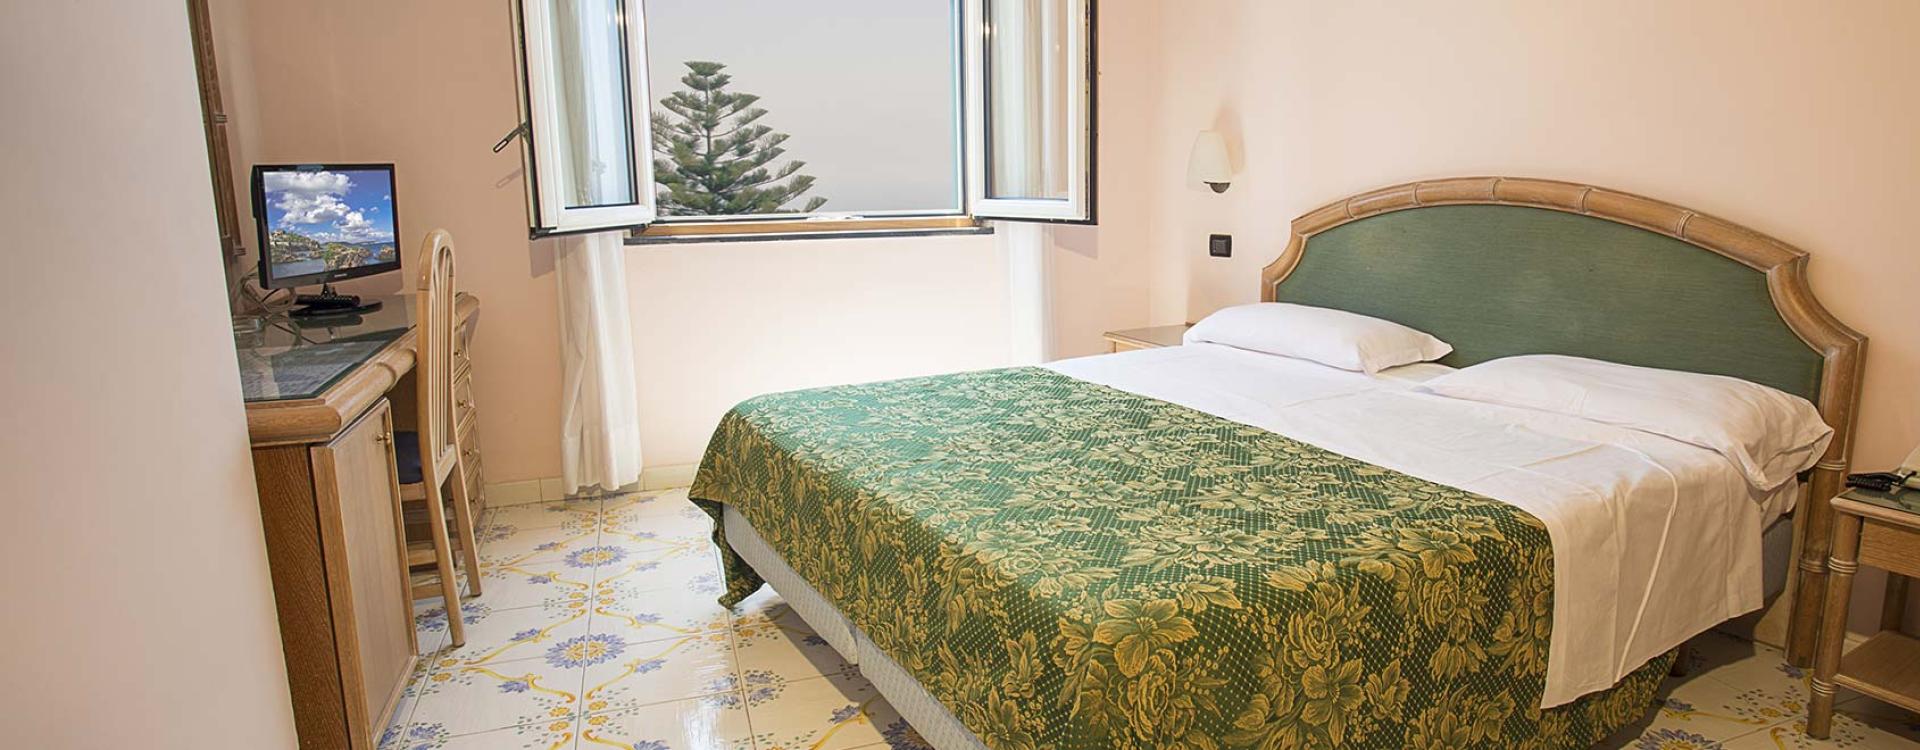 hotelsaintraphaelischia en hotel-rooms-ischia 009